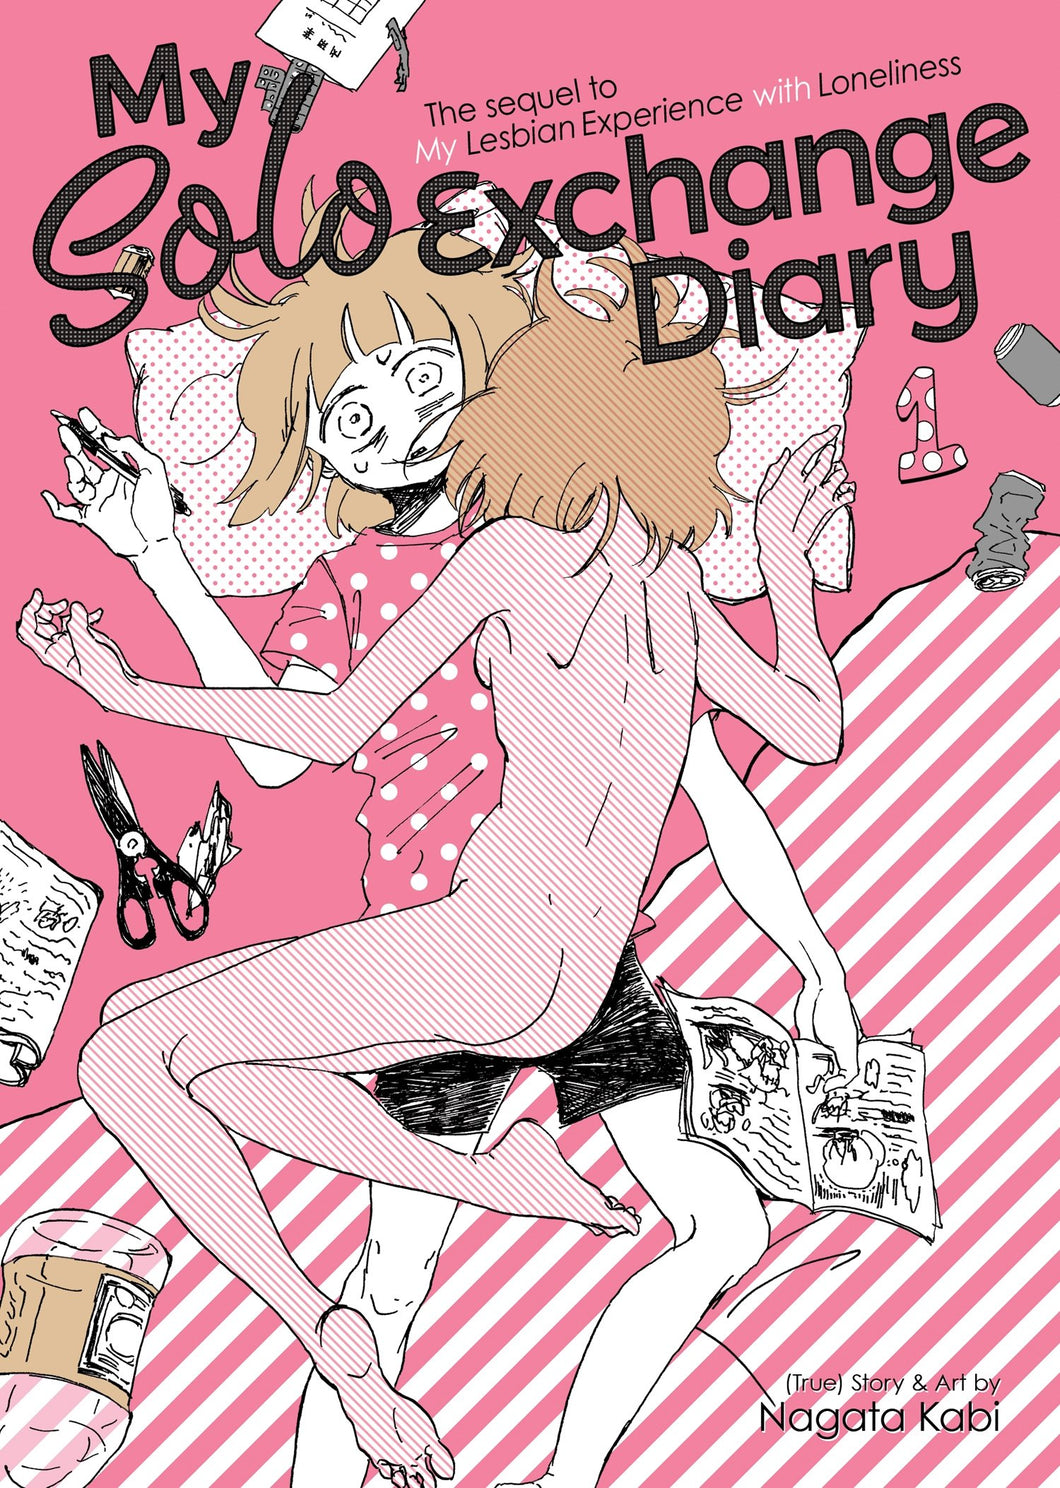 My Solo Exchange Diary by Nagata Kabi